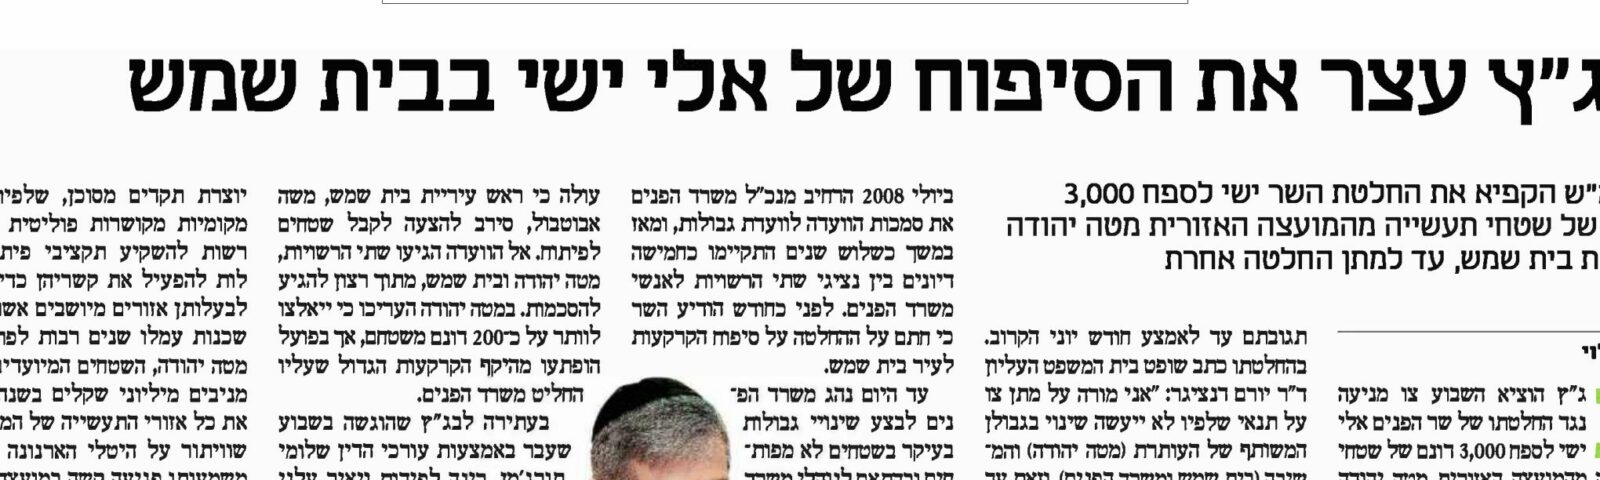 Calcalist: Un golpe para Eli Yishai: El Tribunal Supremo congela la anexión de zonas industriales de Mateh Yehuda a la ciudad de Beit Shemesh